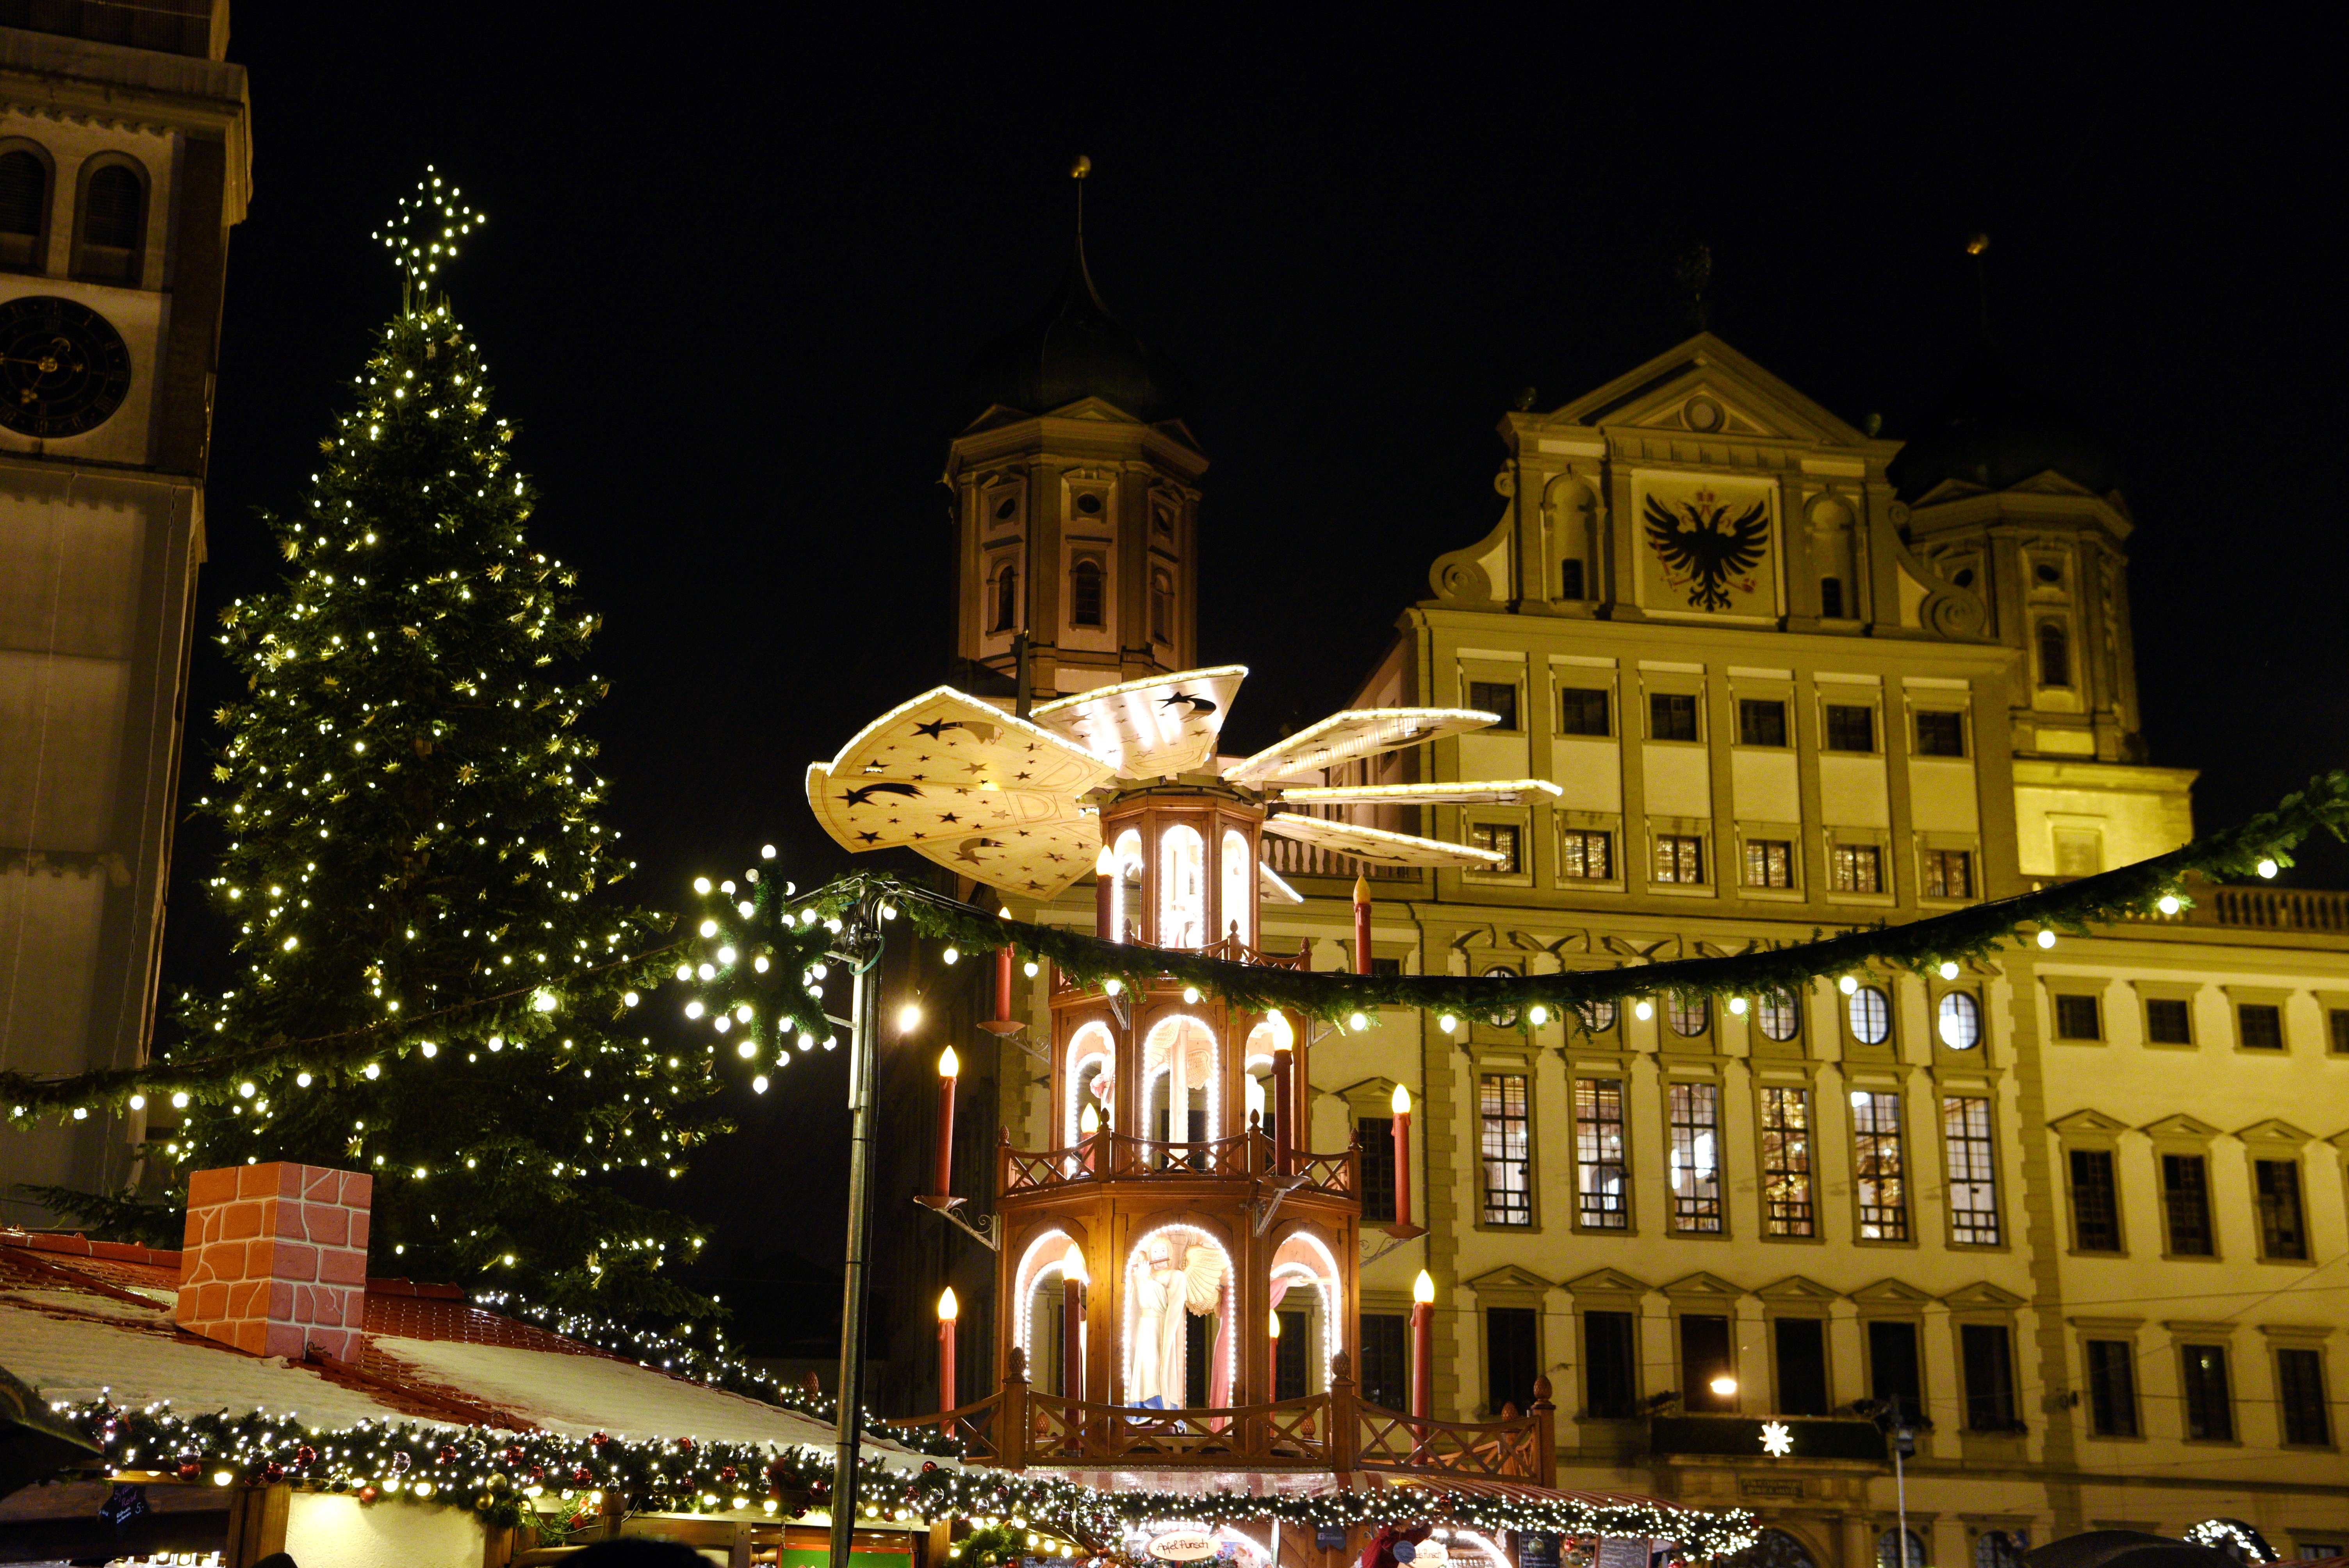 Die Pyramide und der Christbaum auf dem Christkindlesmarkt sind vor dem beleuchteten Rathaus und dem Perlachturm zu sehen.